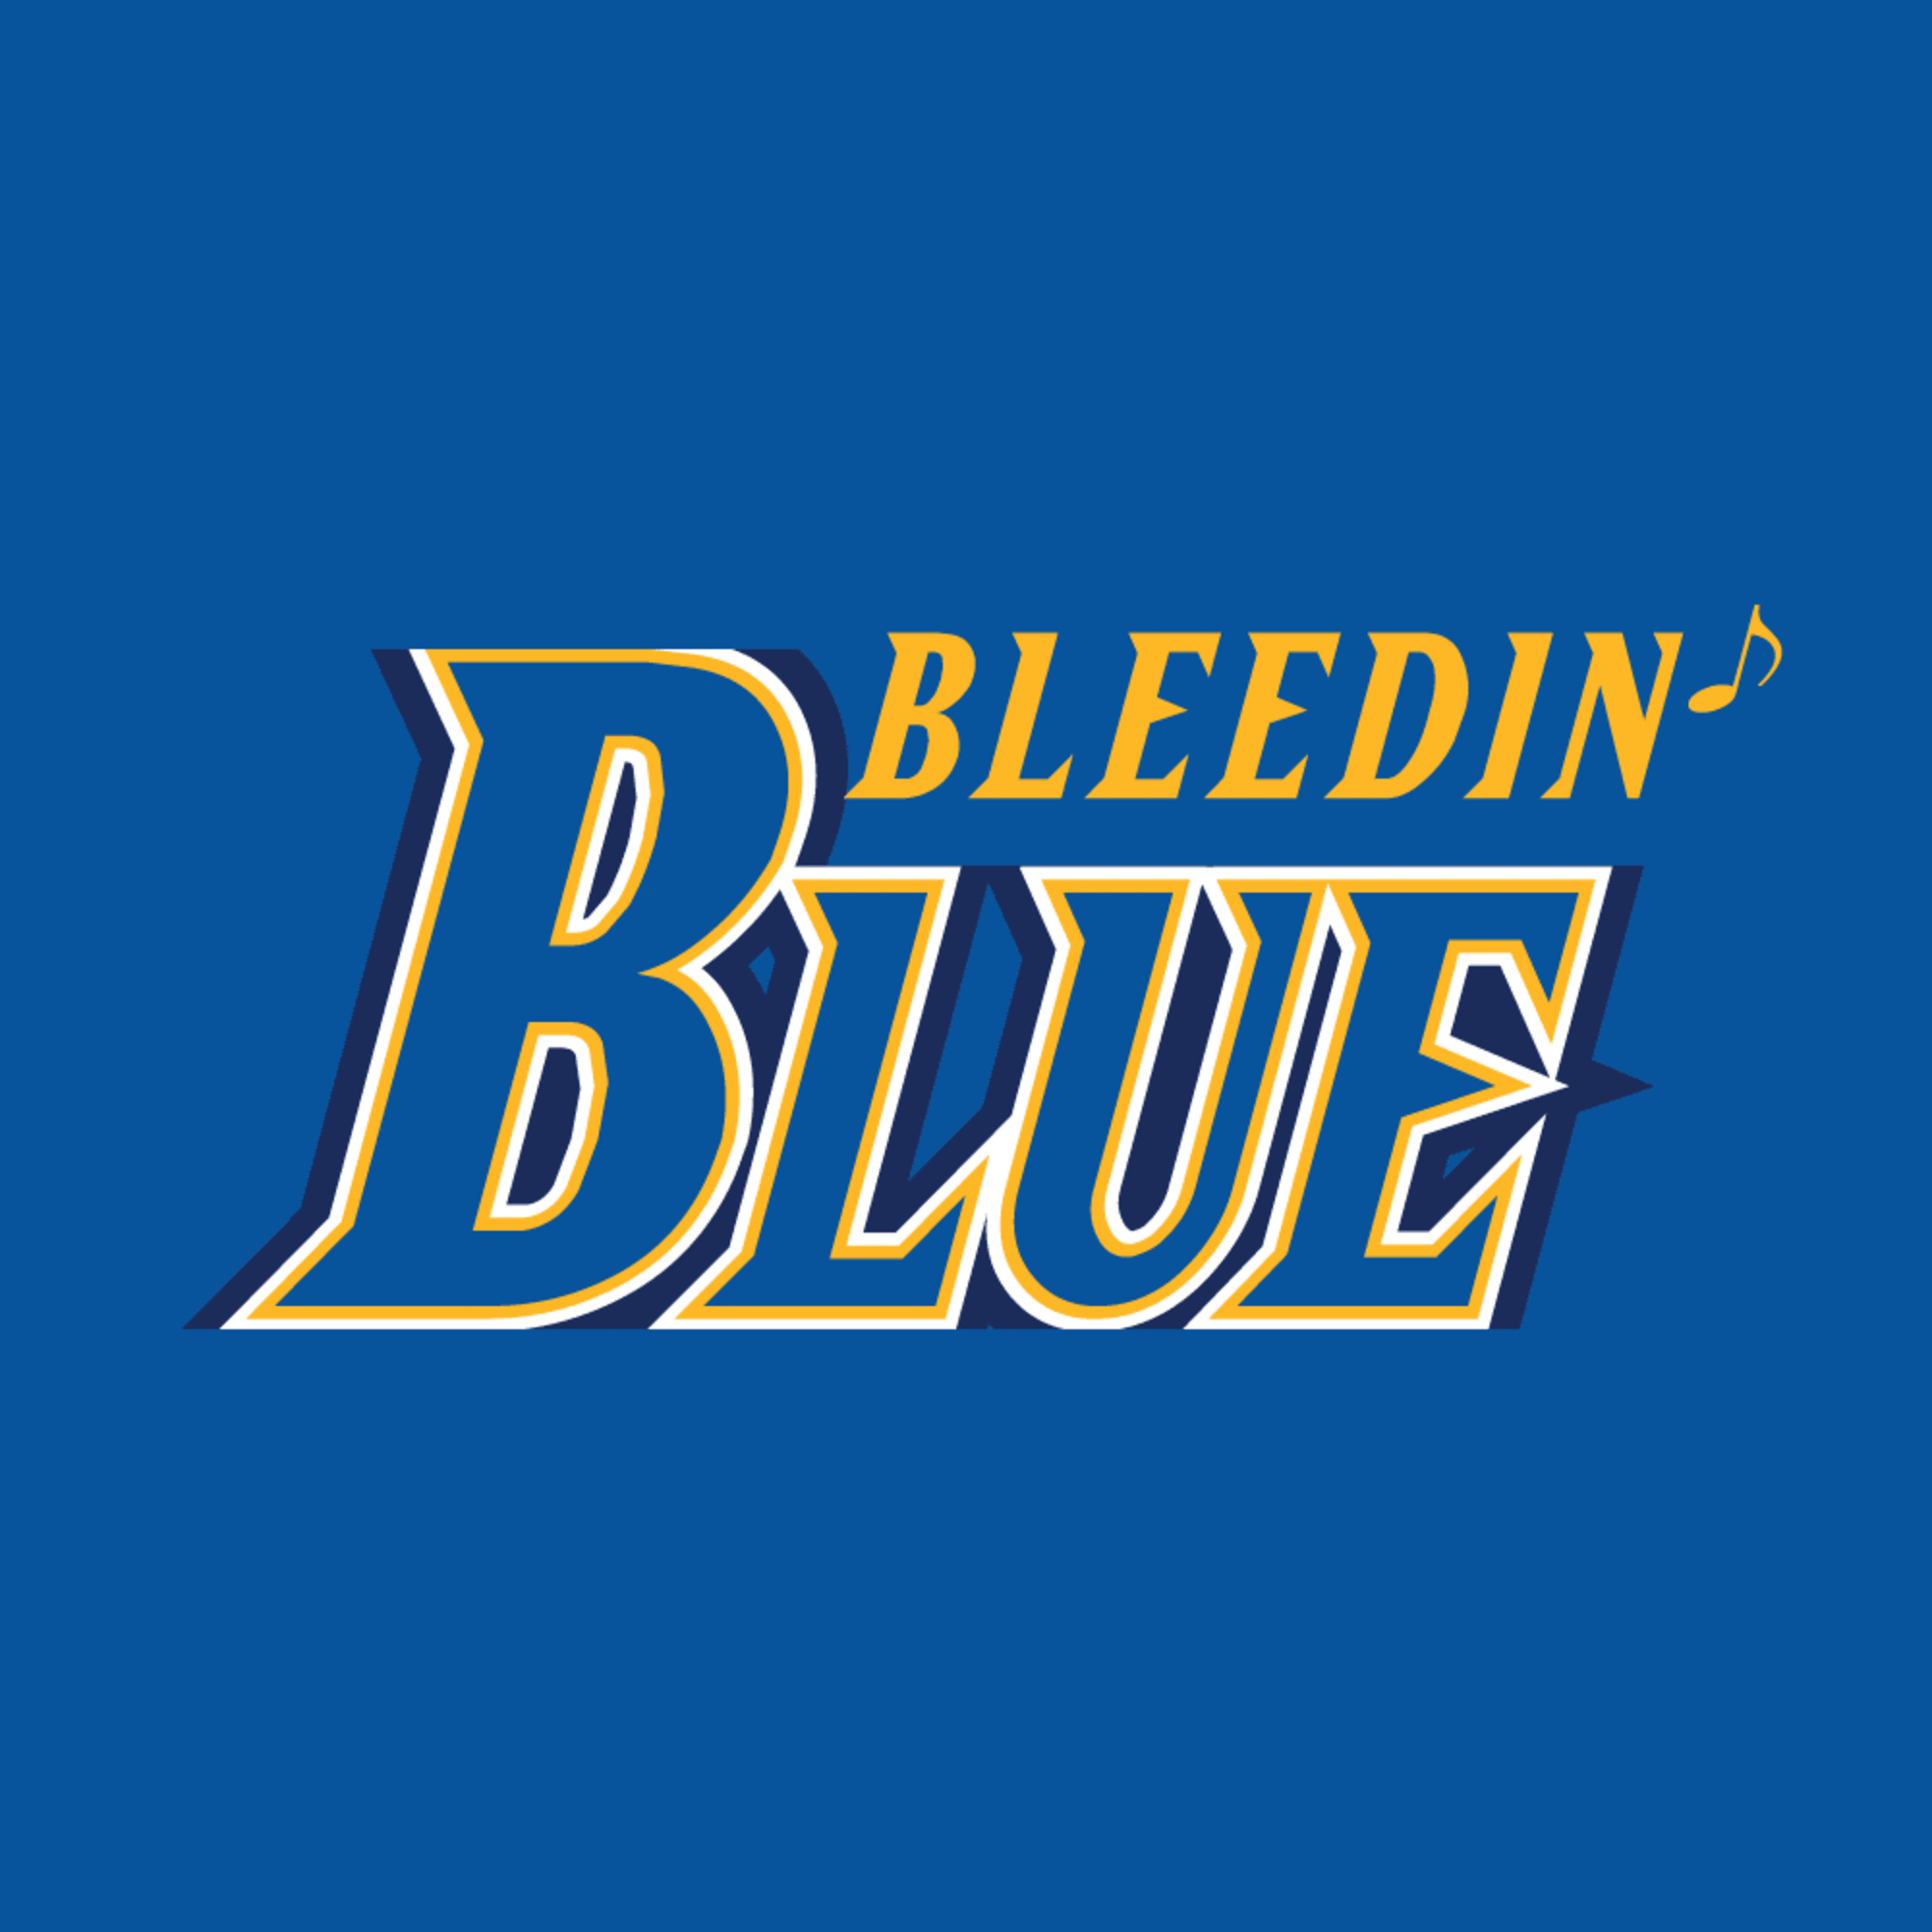 Bleedin' Blue - A St. Louis Blues Fan Site - Blogs, Opinion and